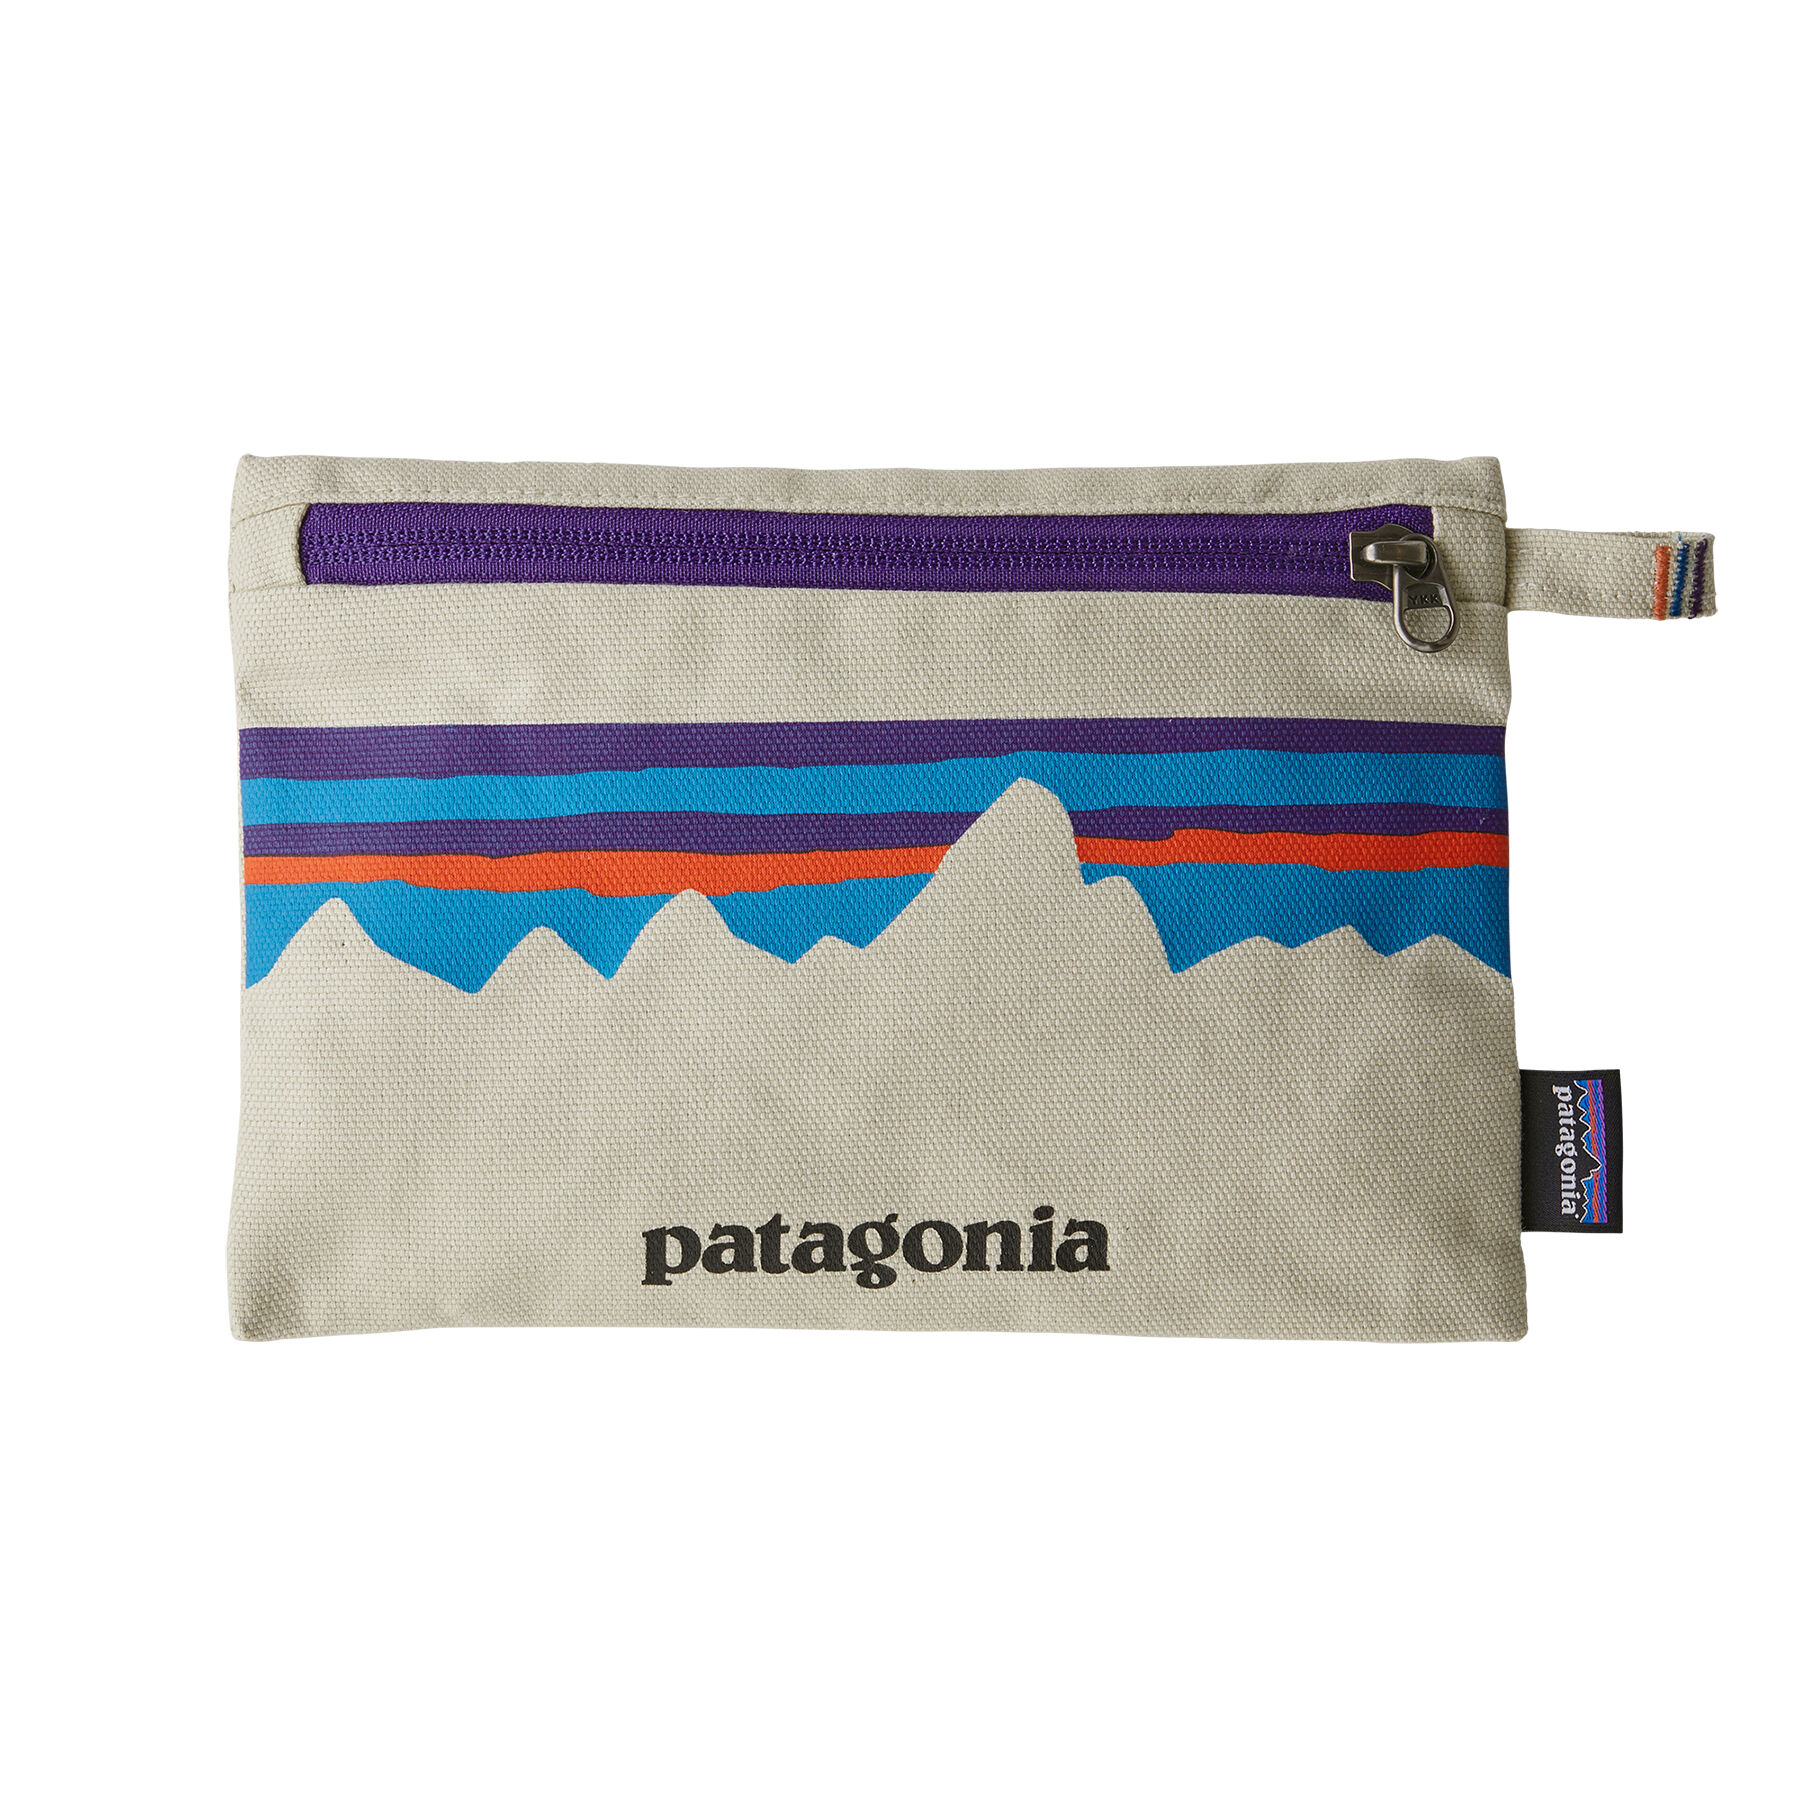 Patagonia Zippered Pouch - Laukku